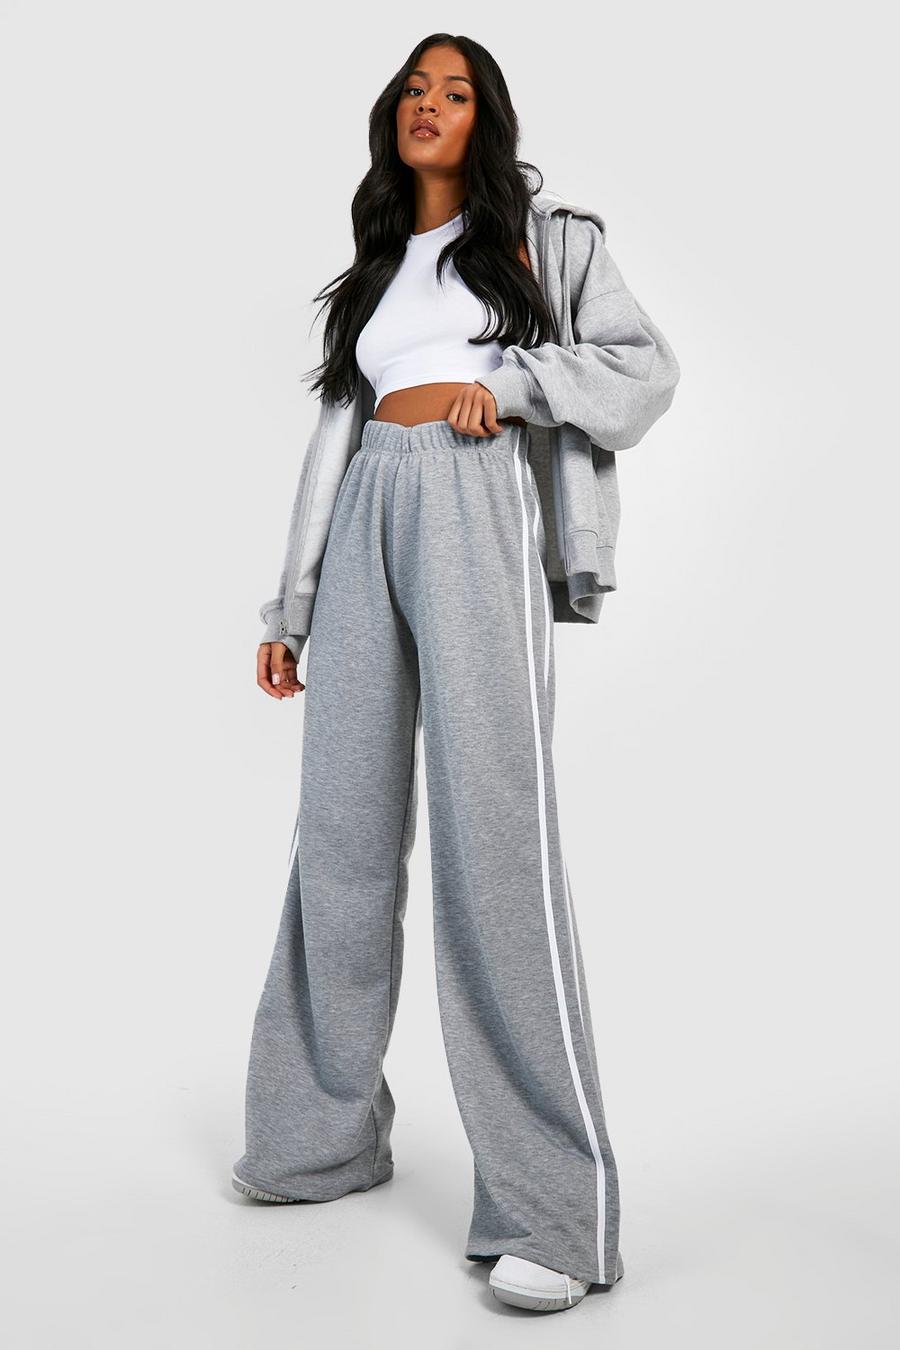 Pantalón deportivo Tall ancho con línea lateral, Grey grigio